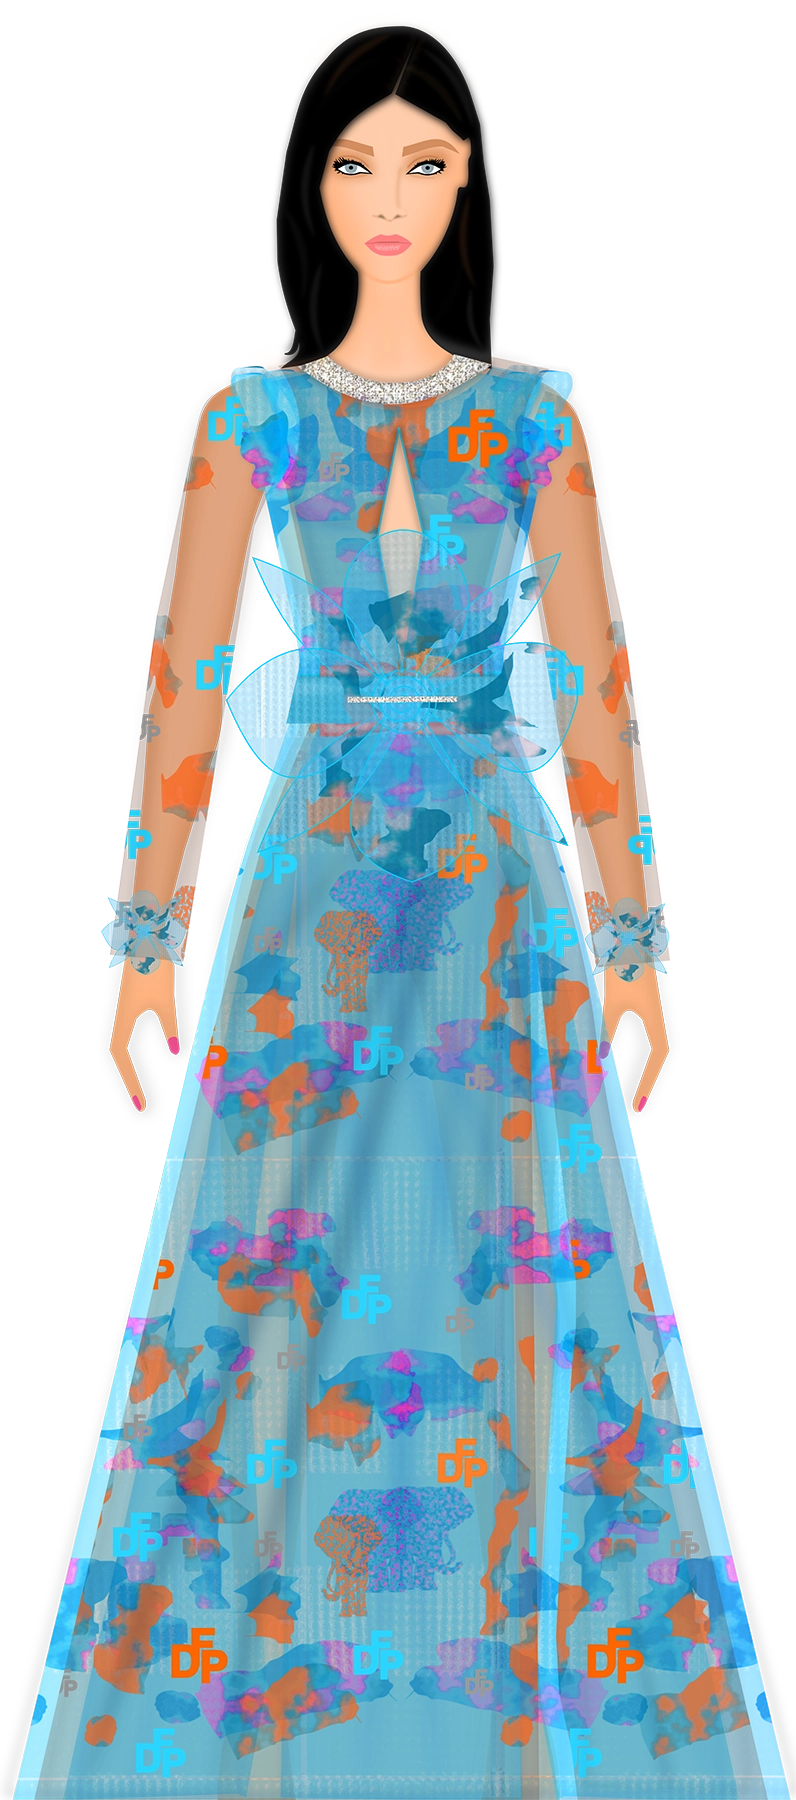 fashion design software sketch - dress design - digital fashion pro - designer clothing